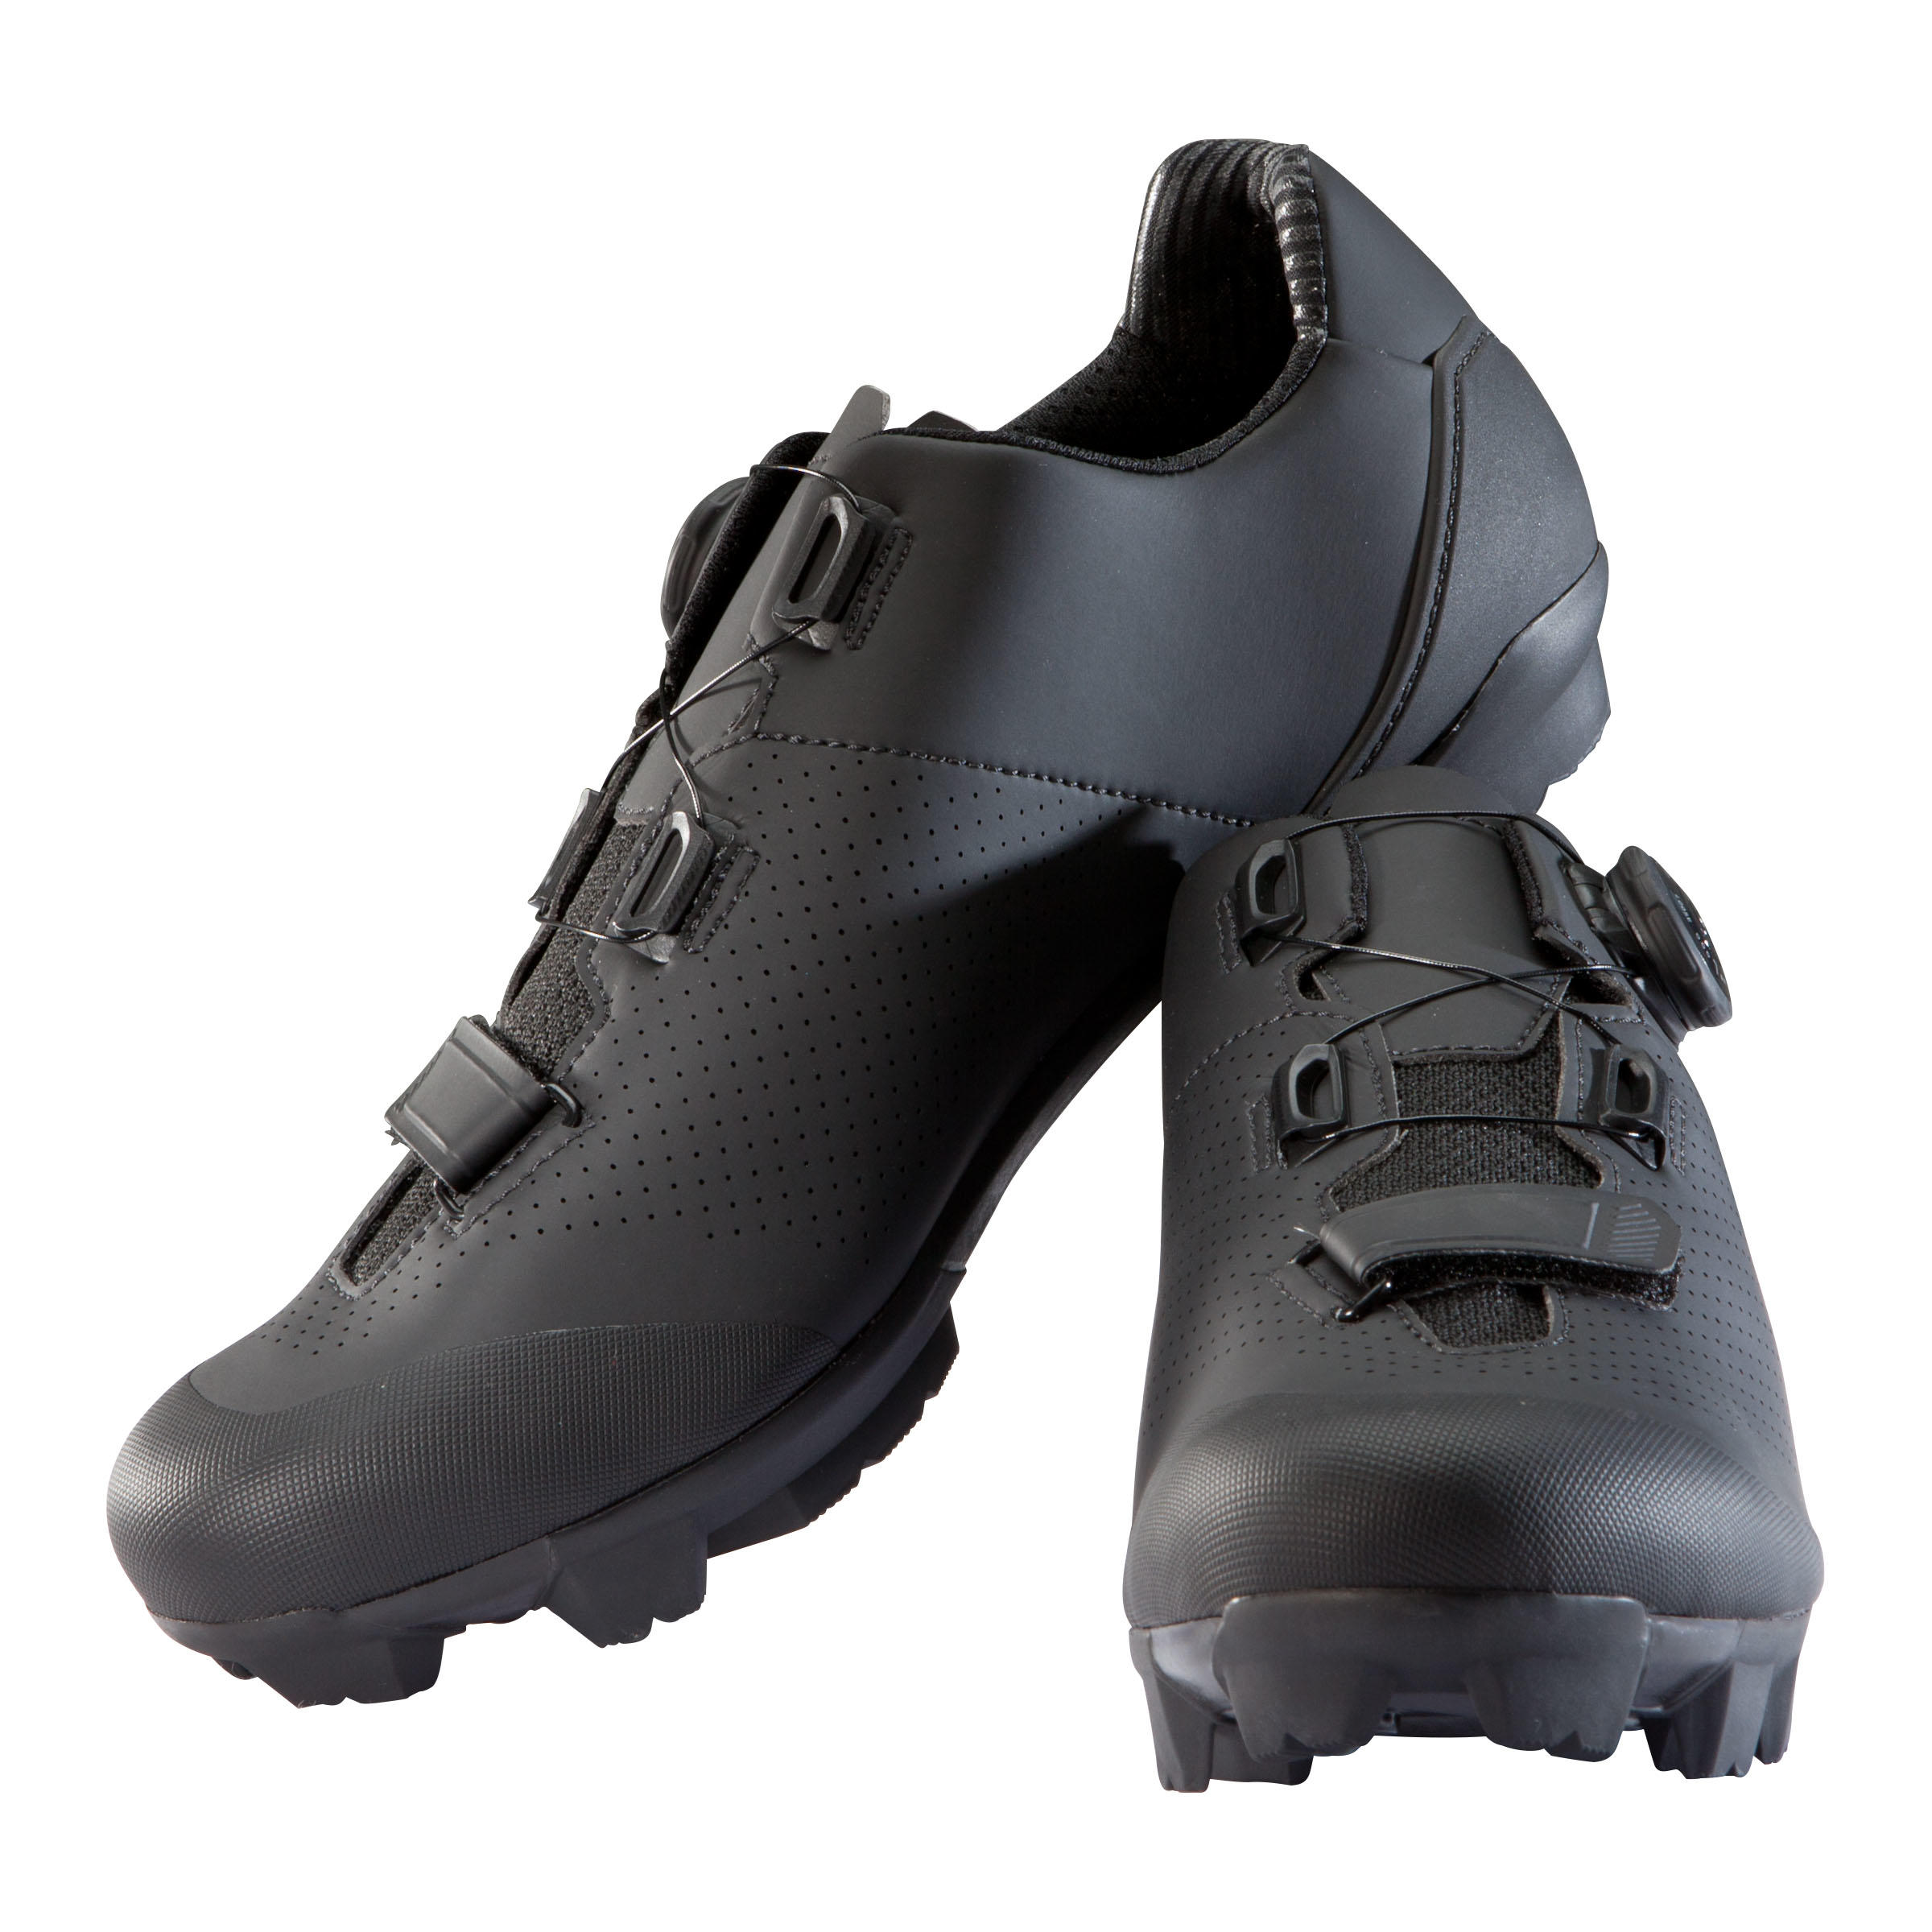 XC 500 MTB Shoes - Black 2/7